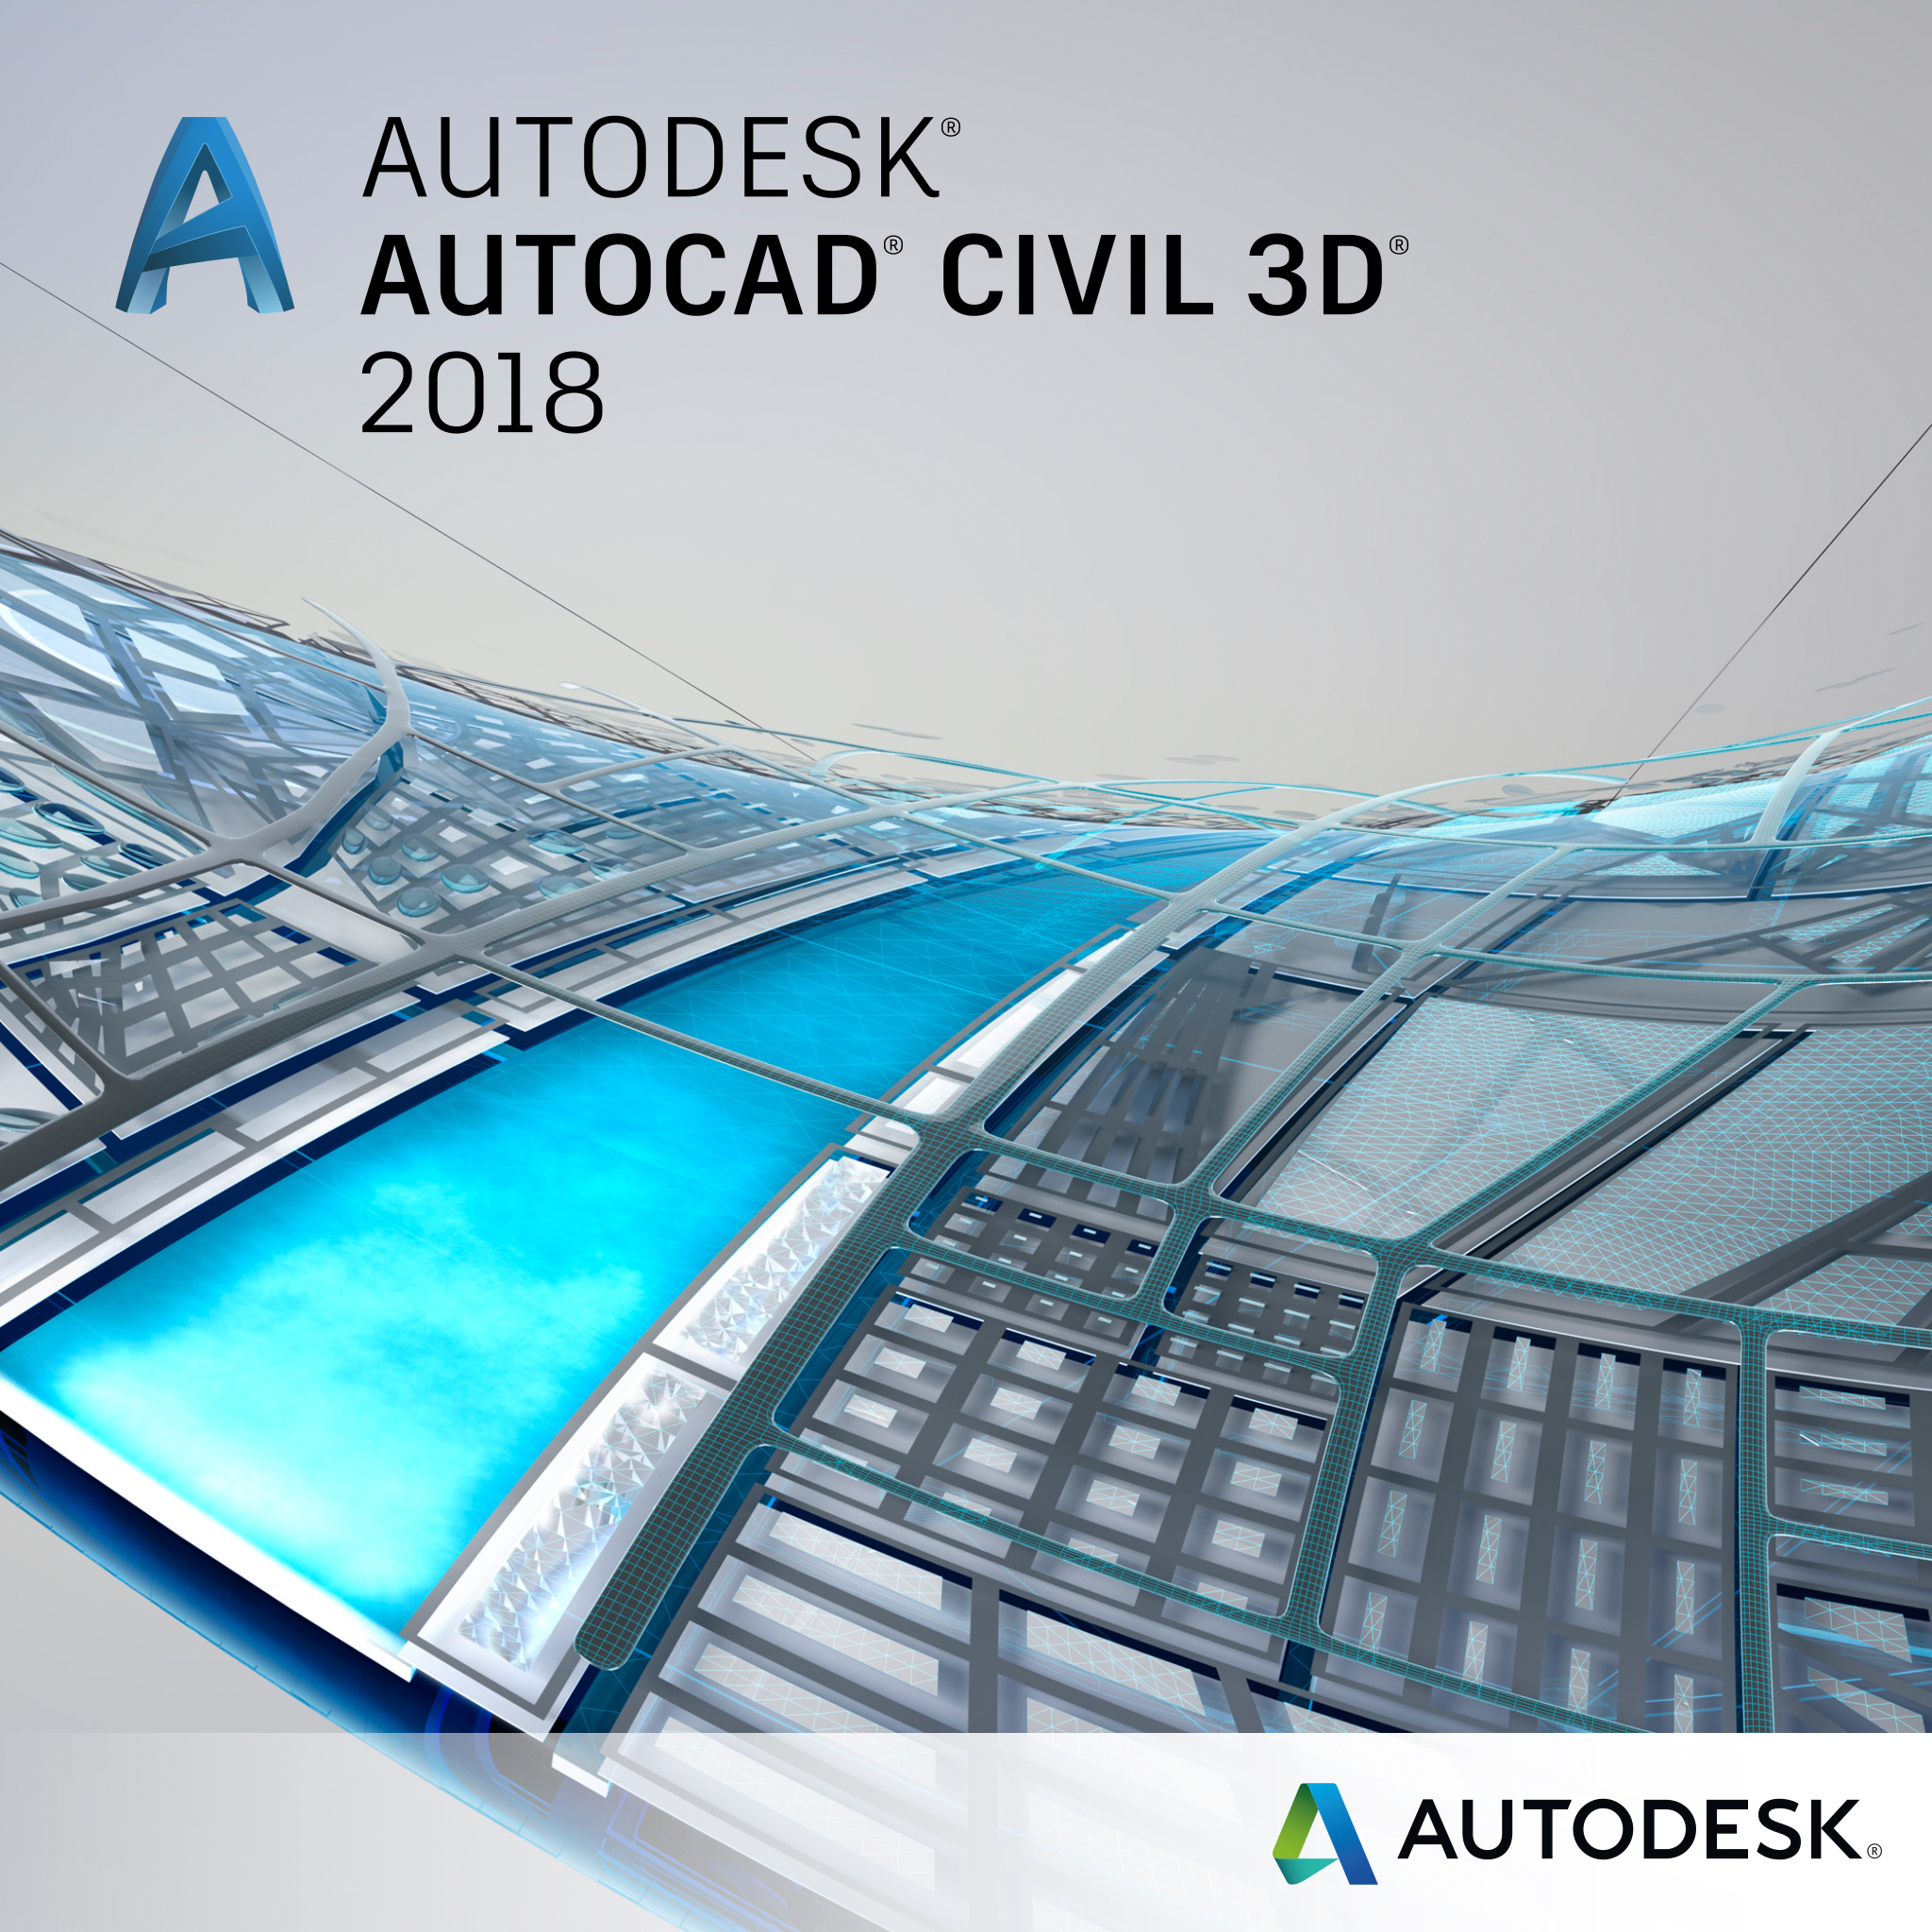 autodesk autocad civil 3d system requirements